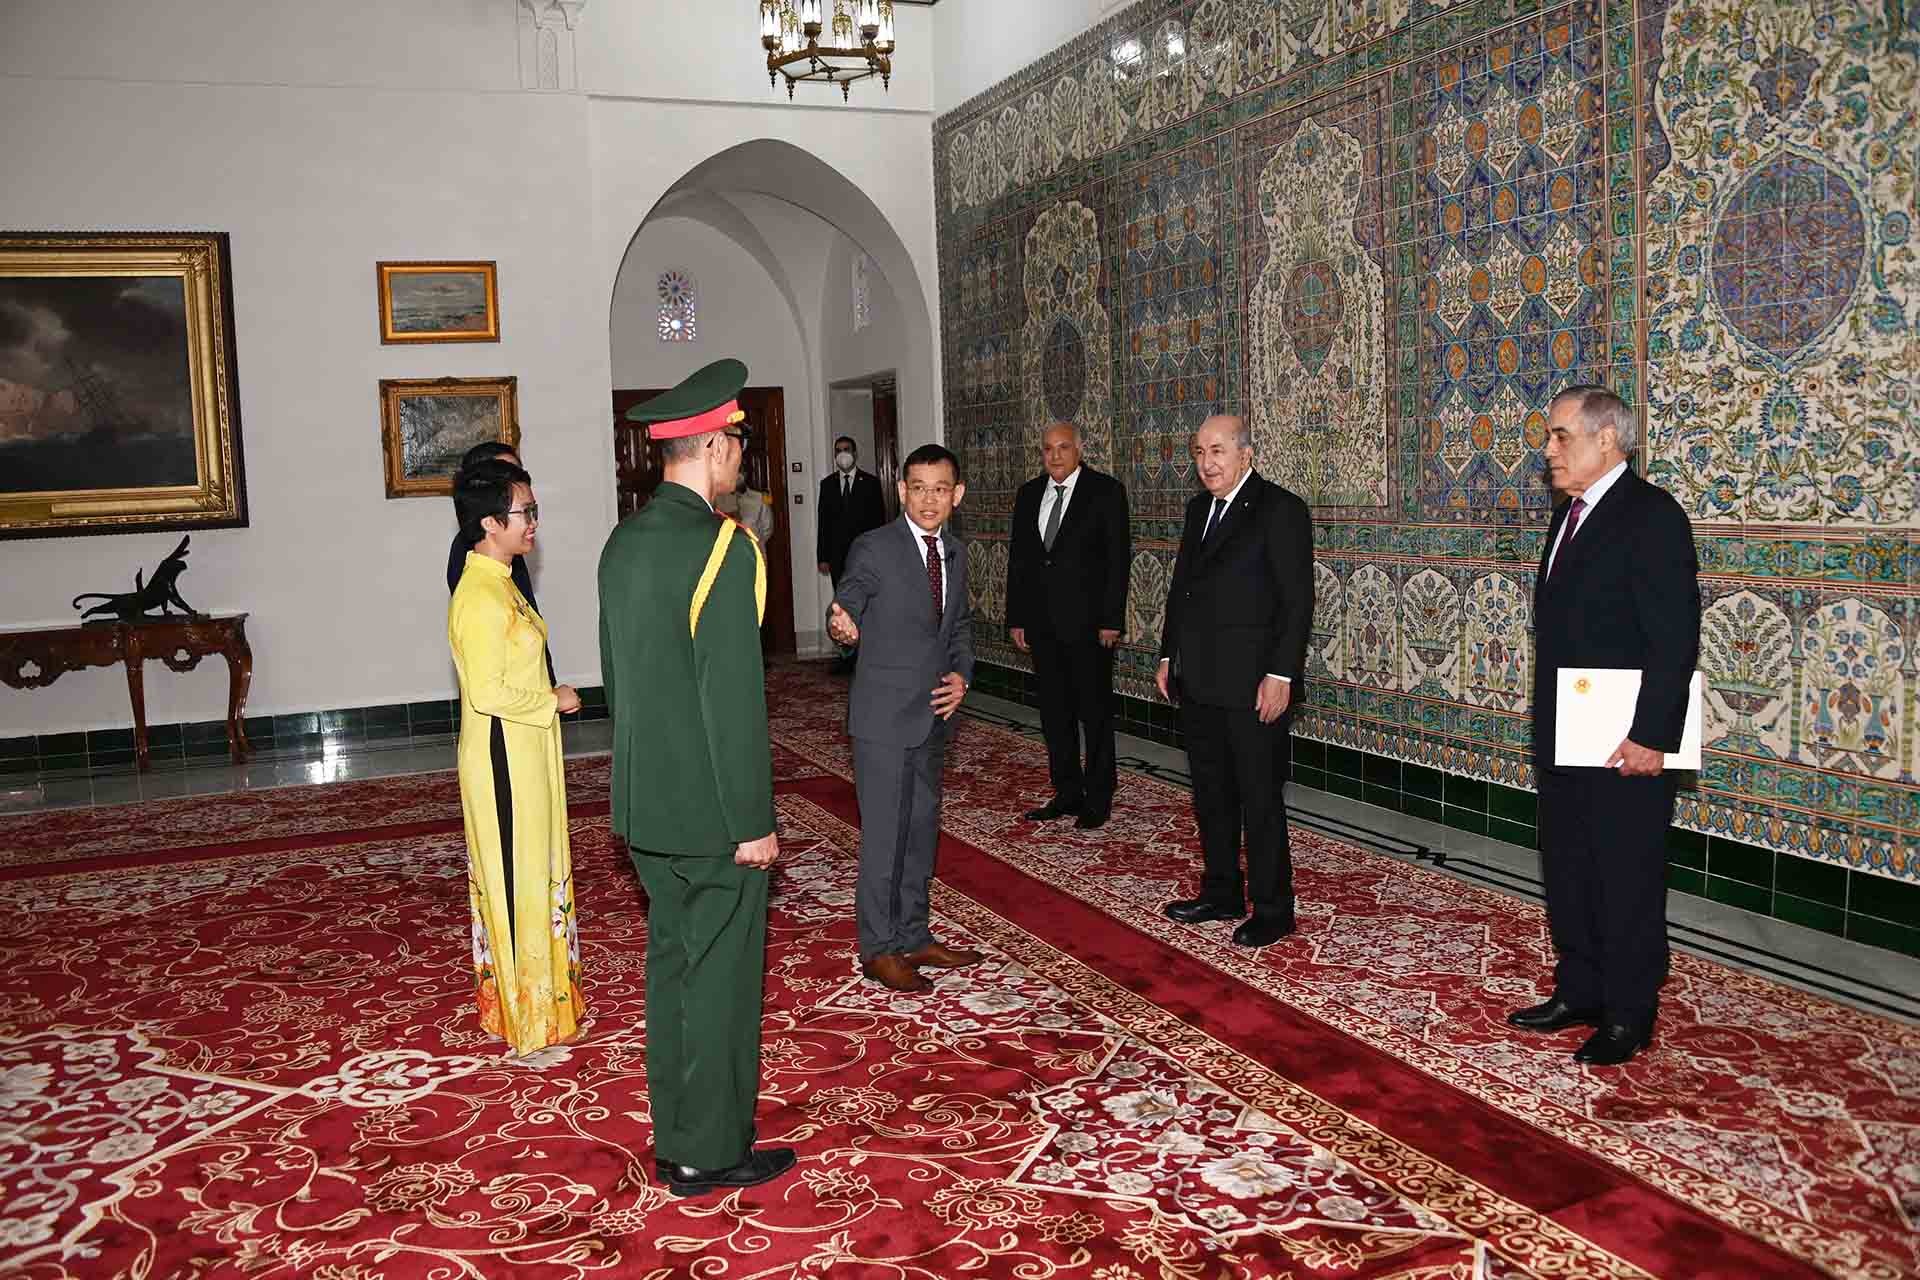 Đoàn Việt Nam chào Tổng thống Algeria tại lễ trình Thư ủy nhiệm.